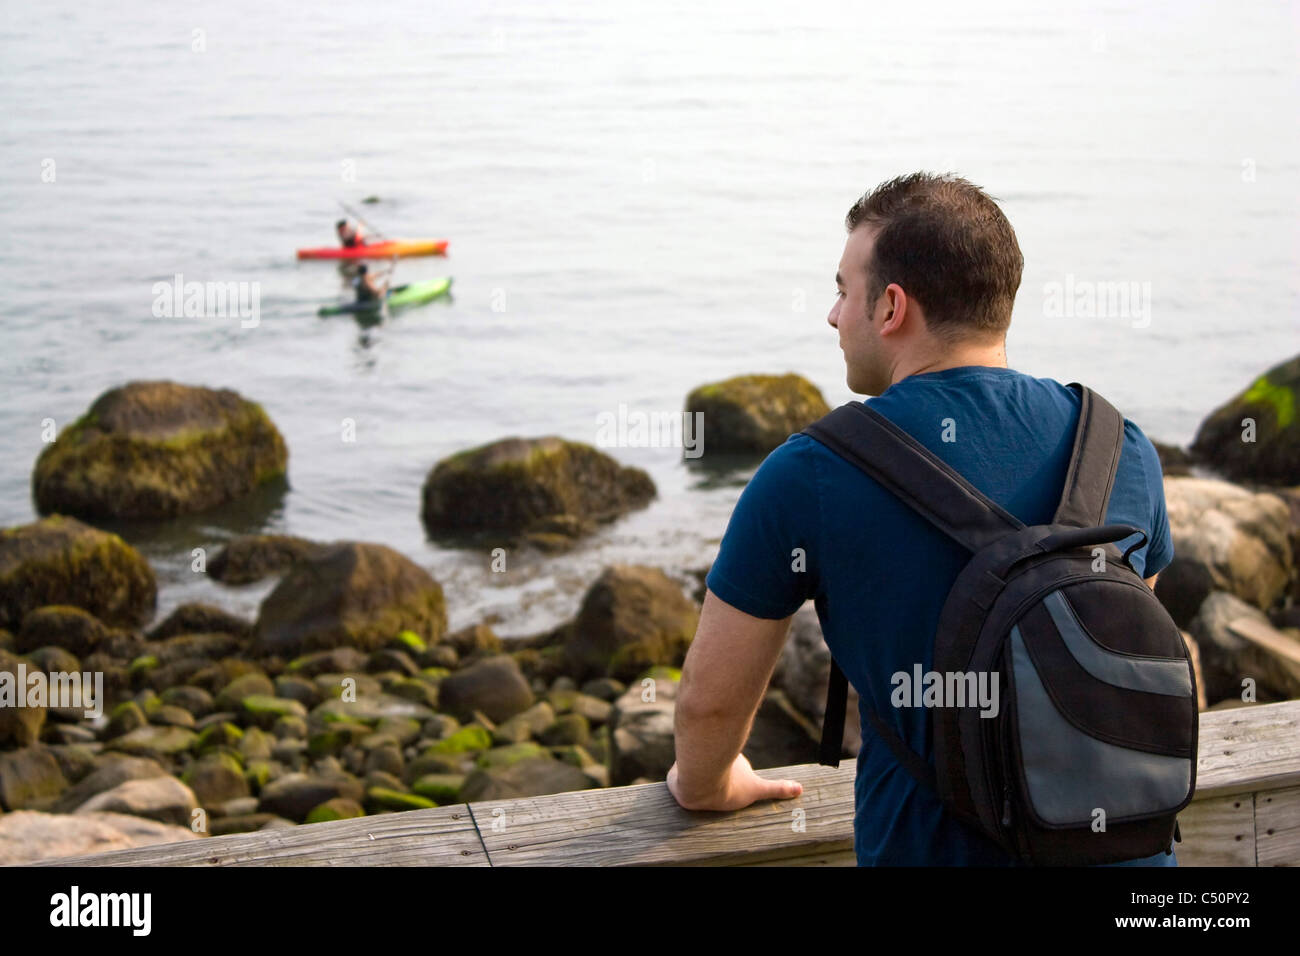 Un jeune homme jouit de la vue par la mer que deux personnes kayak dans la distance. Profondeur de champ. Banque D'Images